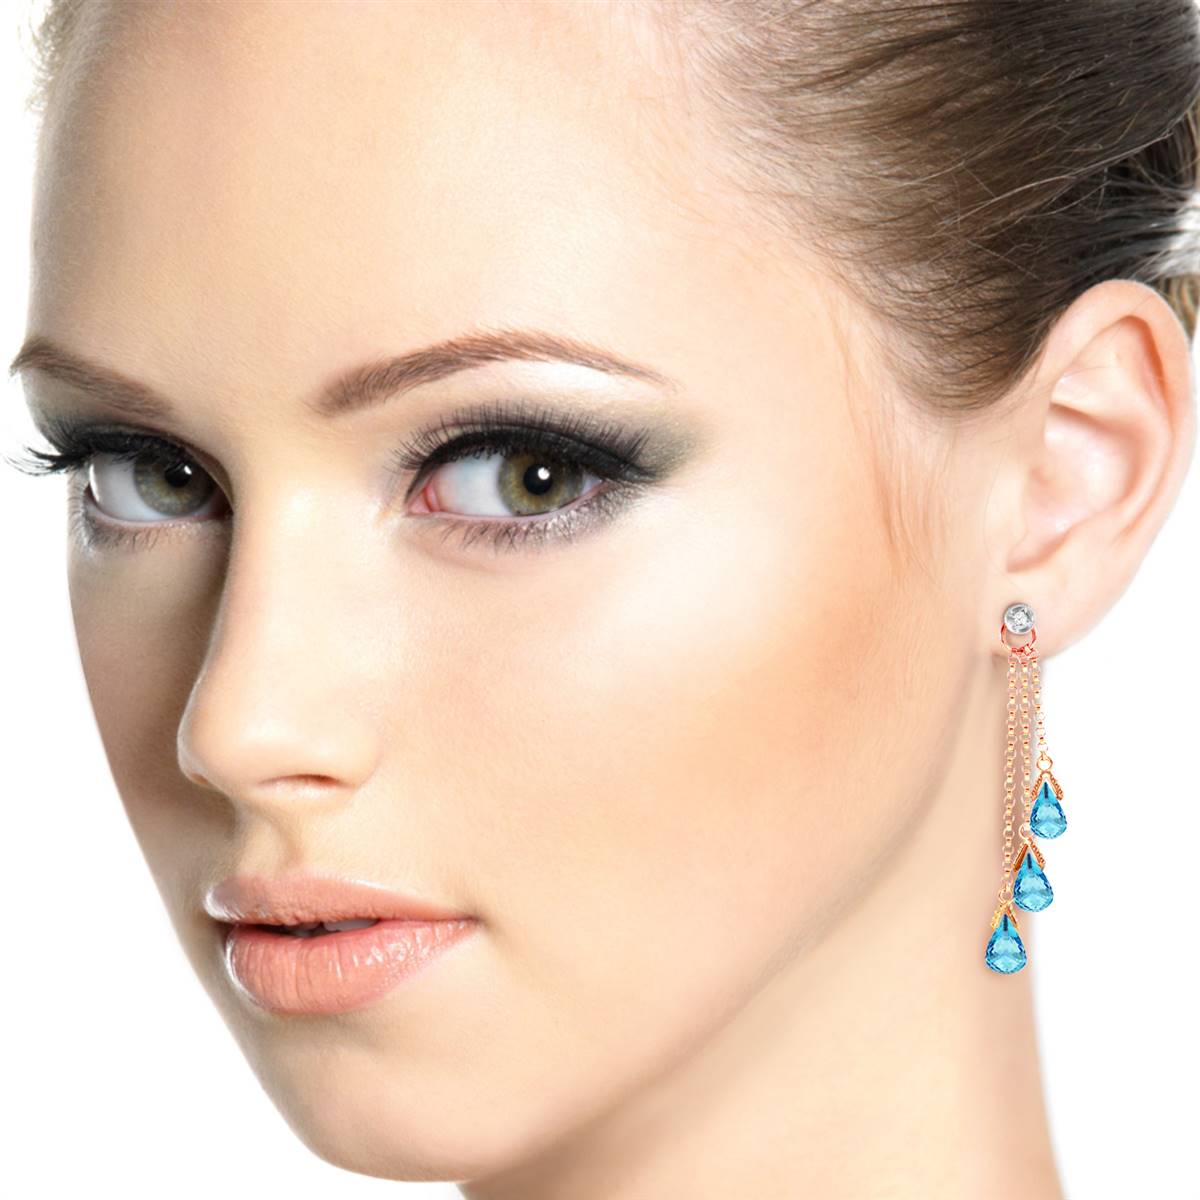 14K Solid Rose Gold Chandelier Earrings w/ Diamonds & Blue Topaz